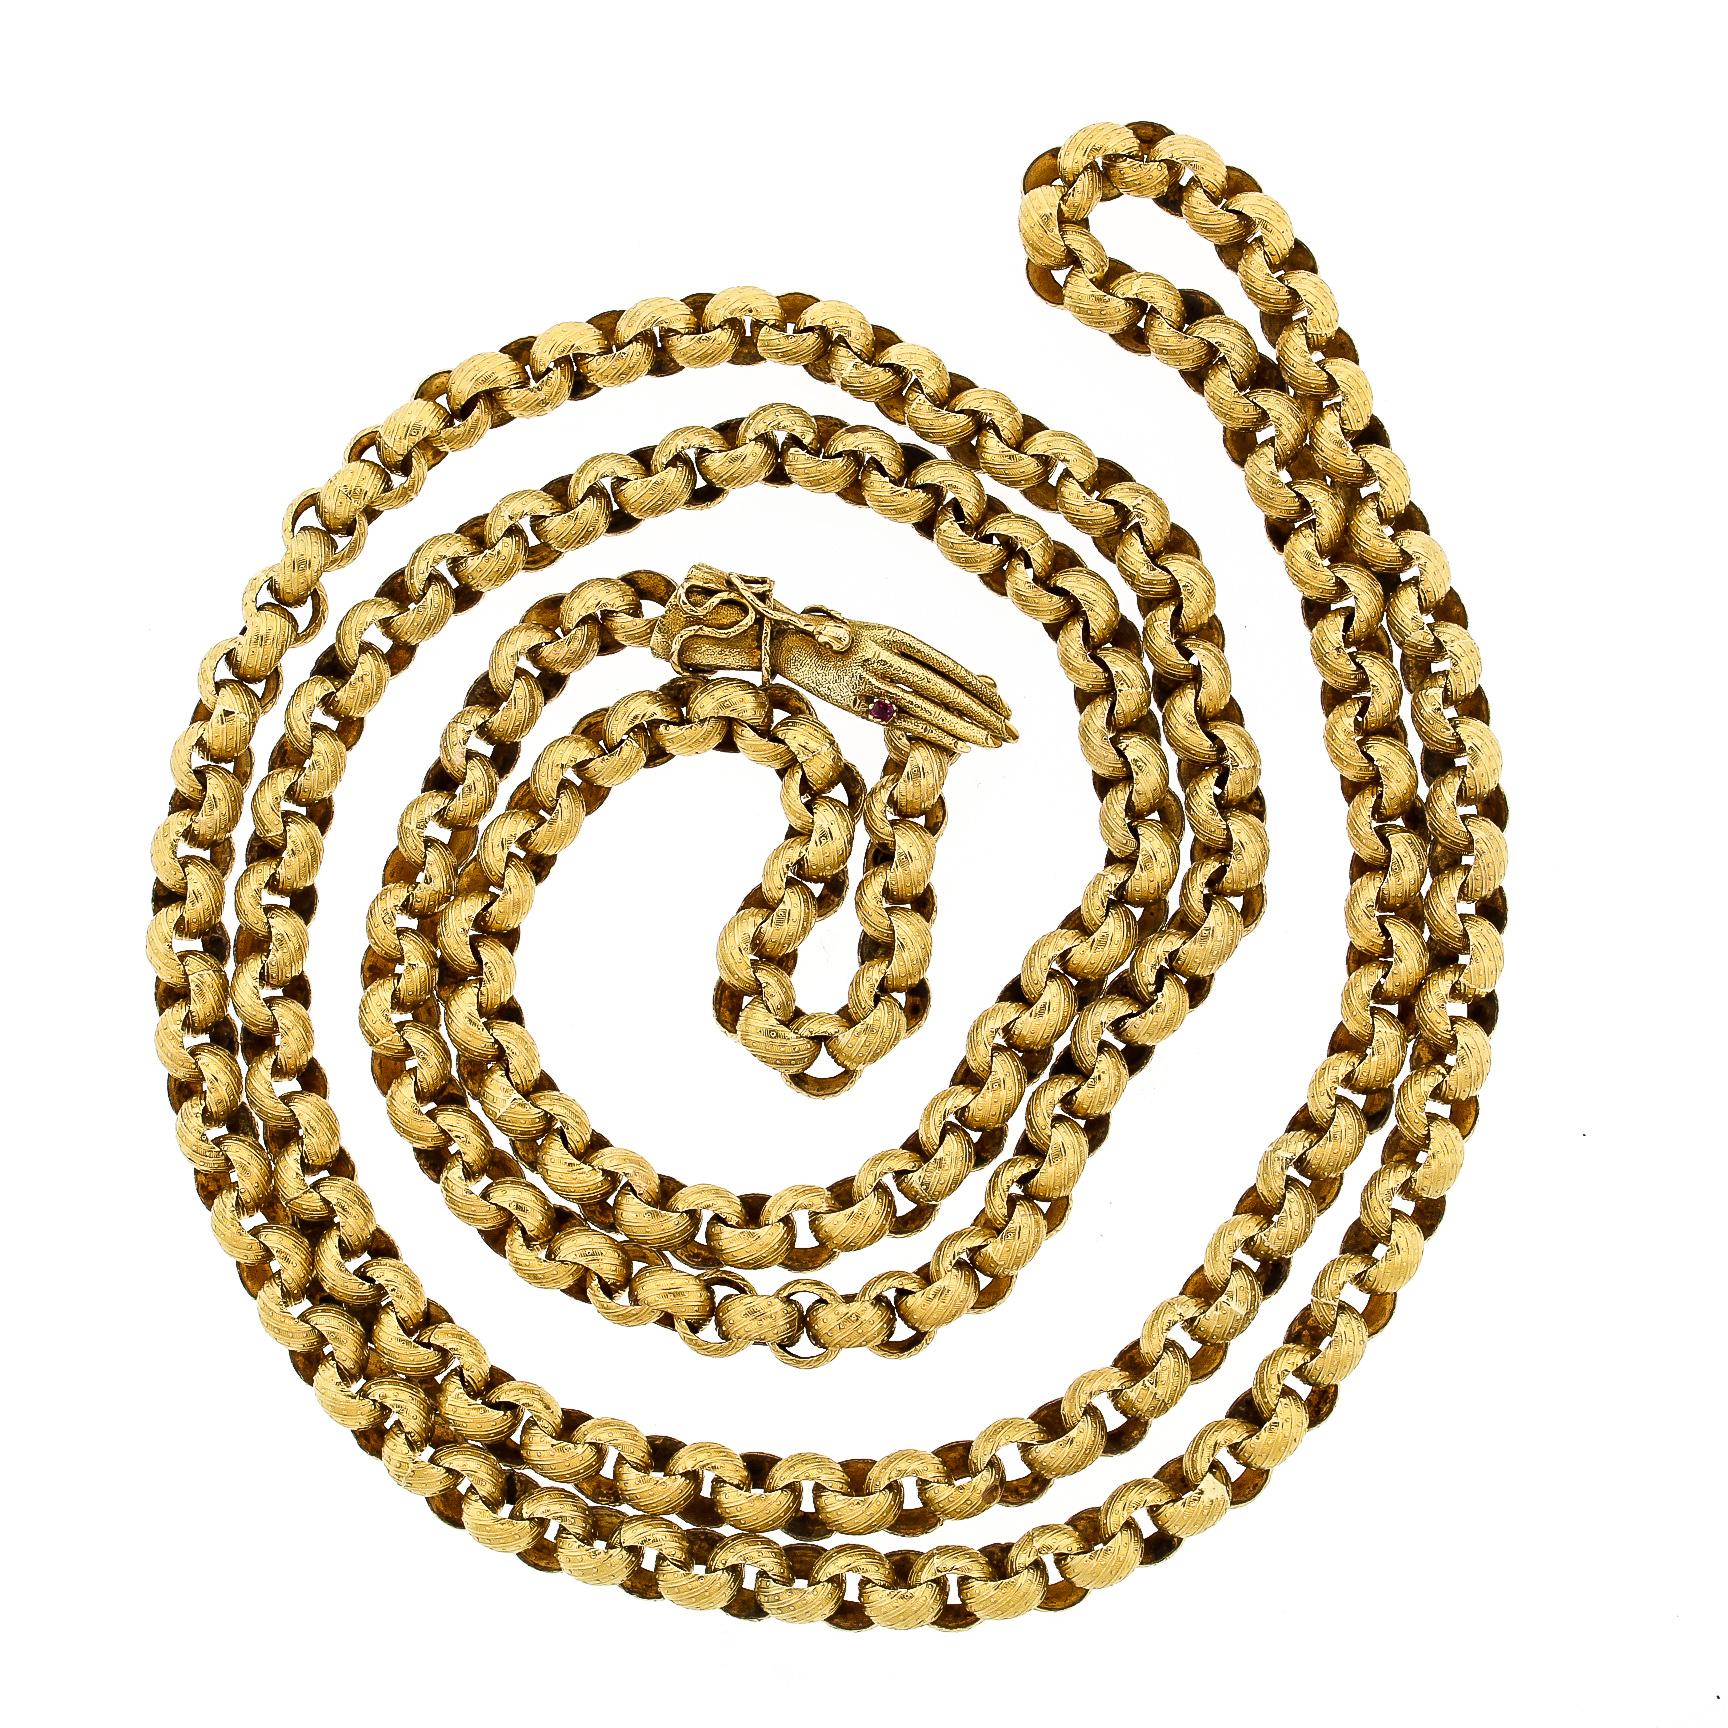 Antique Georgian 14 Karat Gold Long Muff Chain Necklace